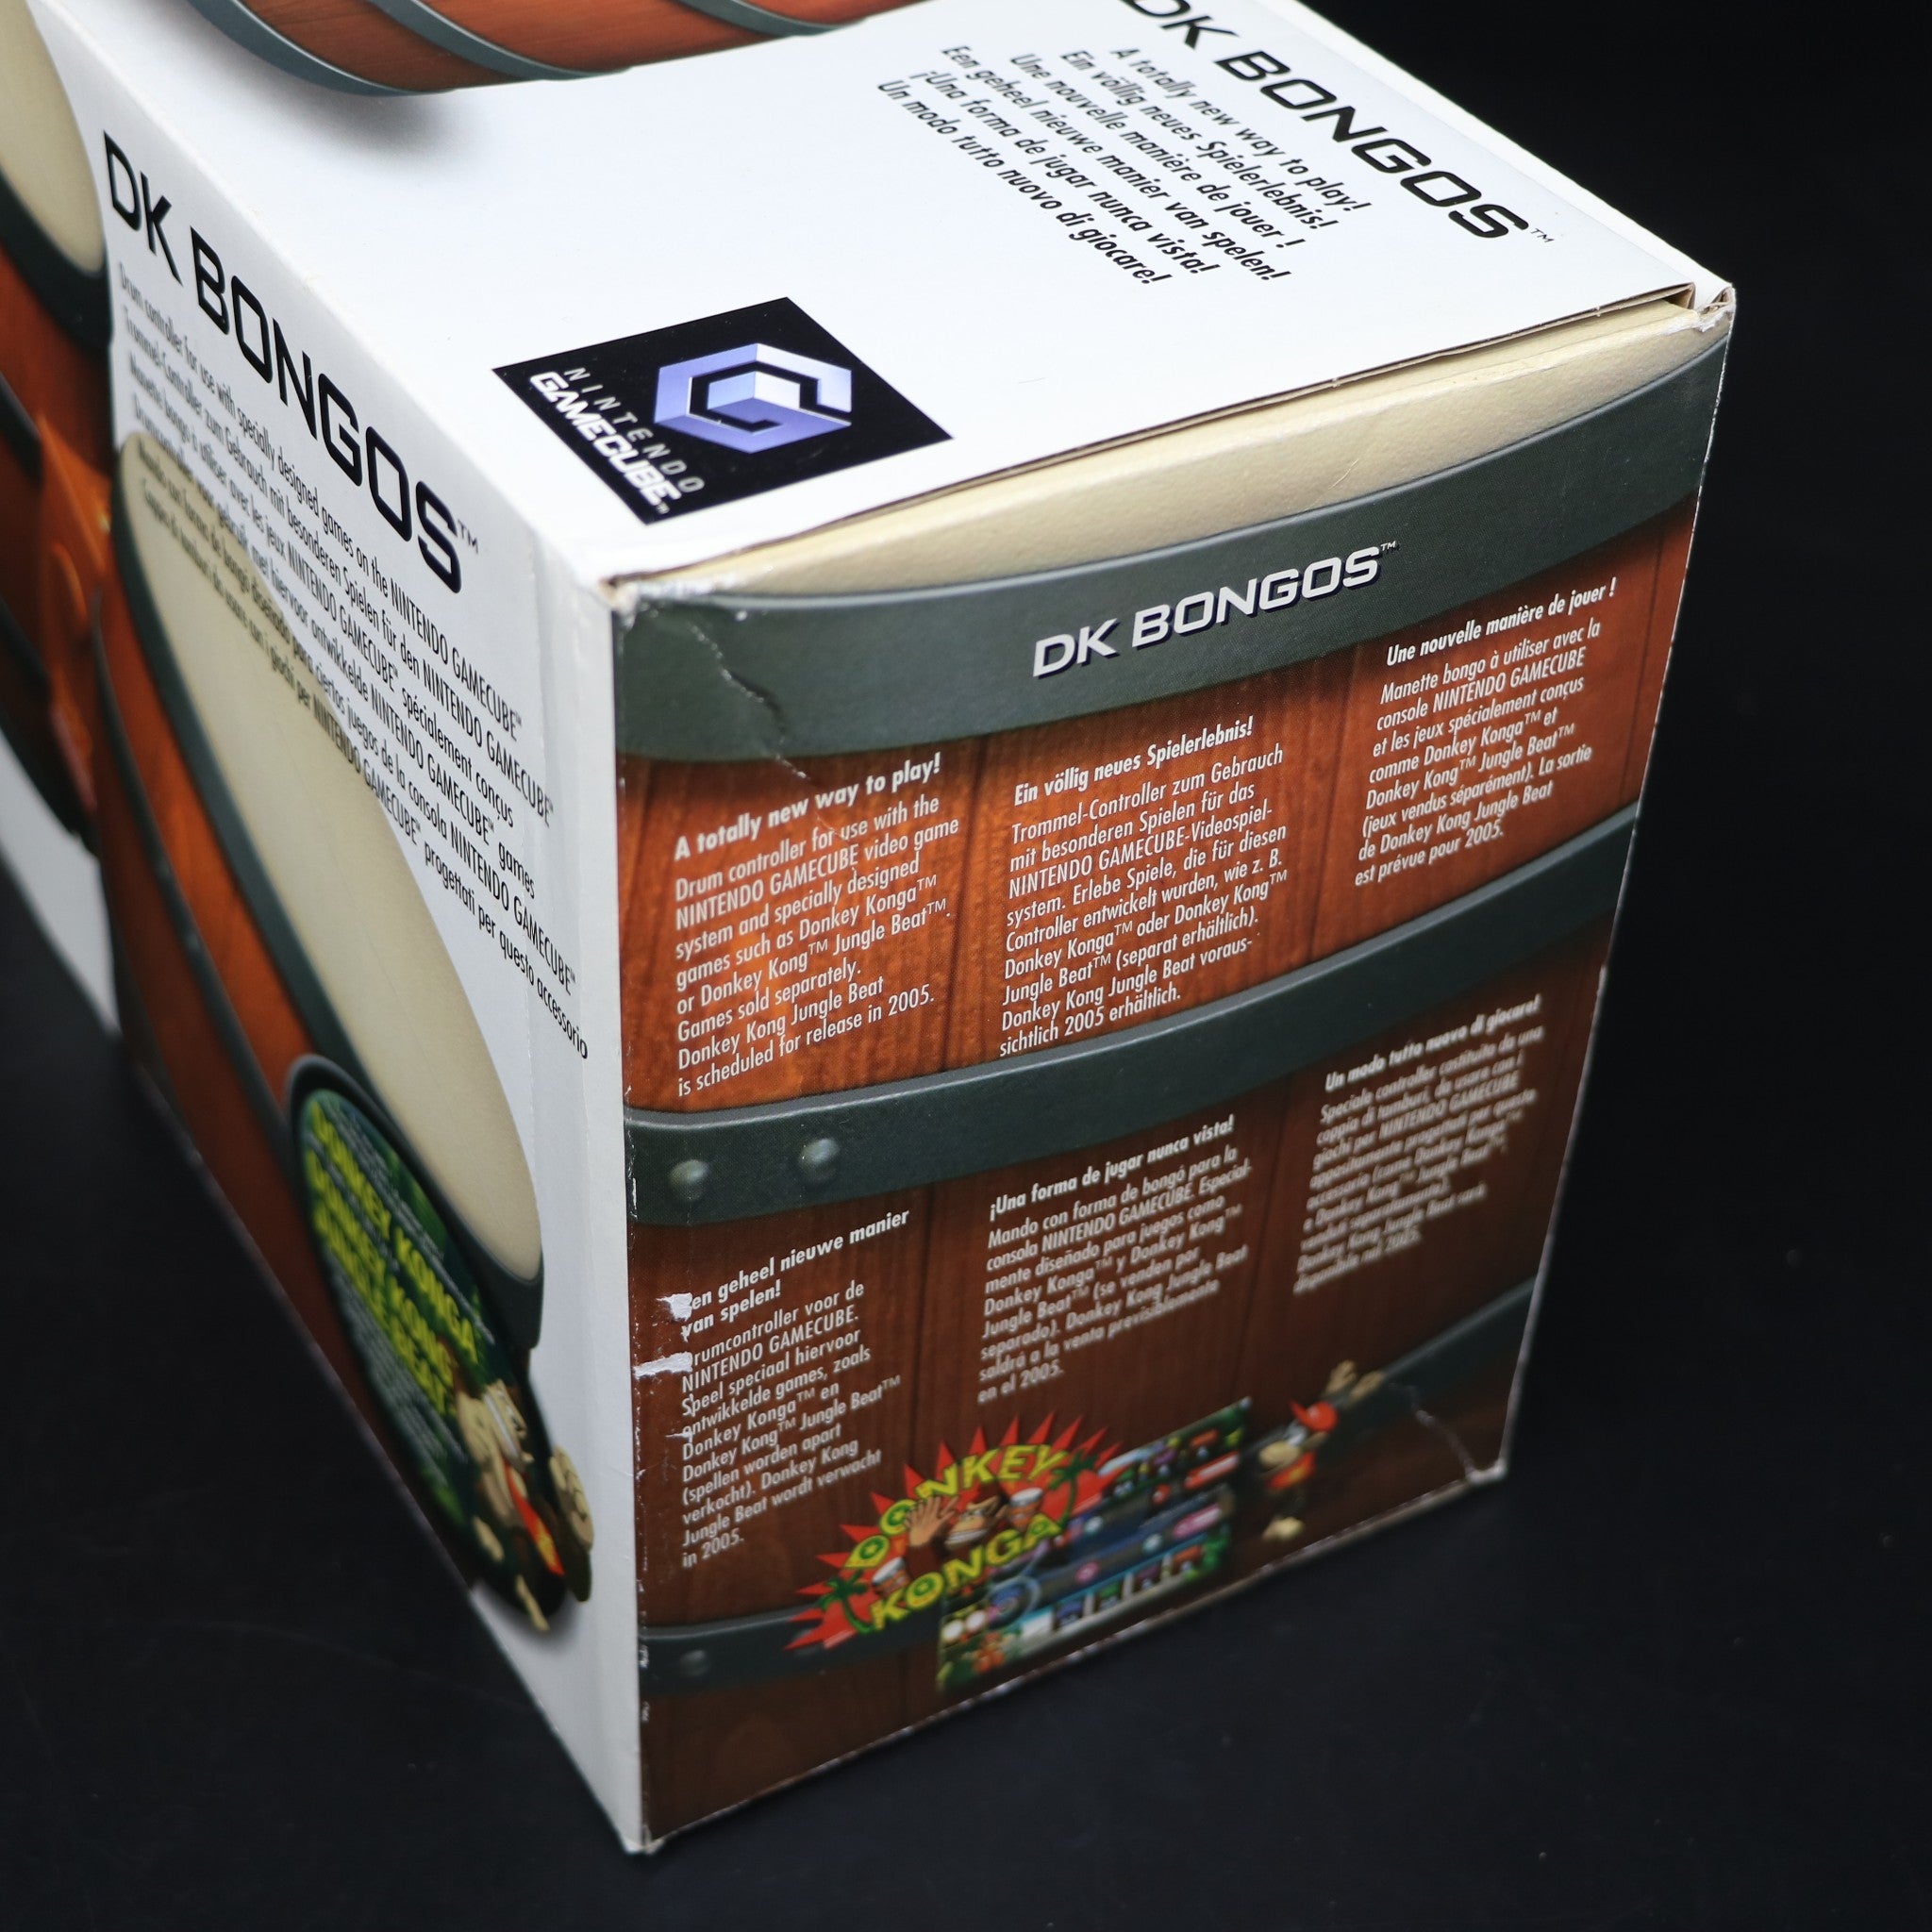 Donkey Konga Game Pak | Nintendo Gamecube DK Bongos Controller | DOL-021 | New